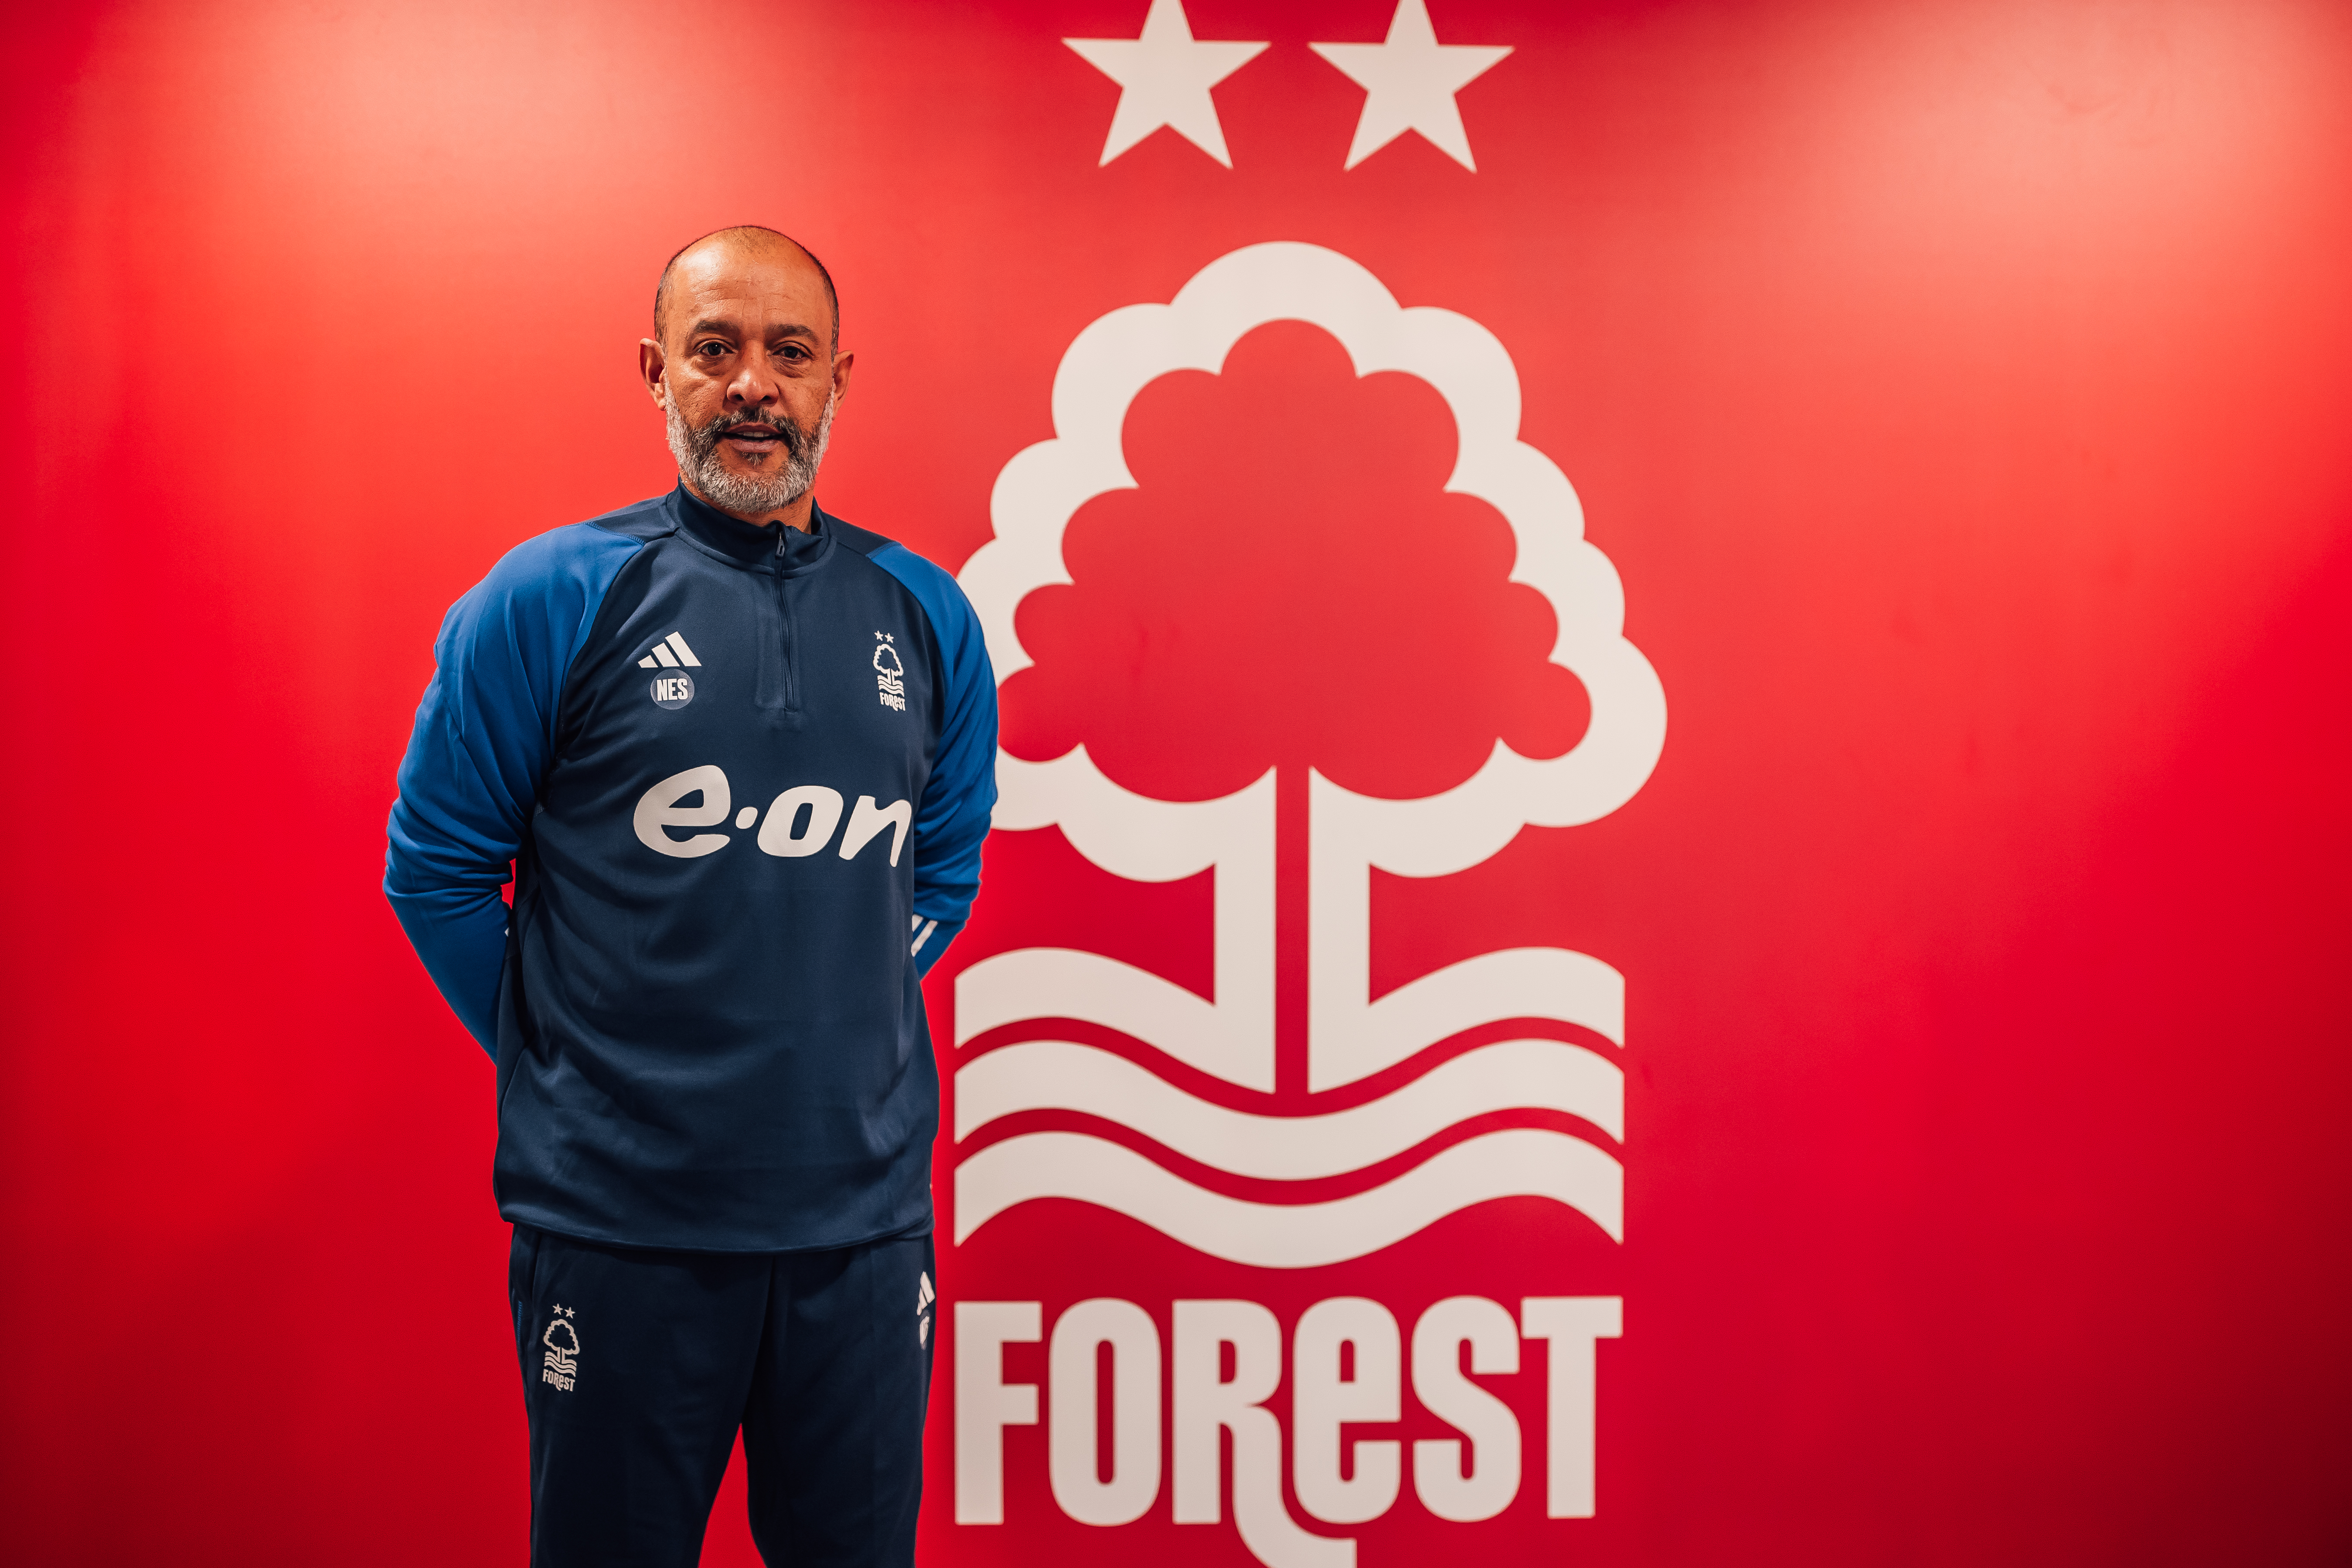 Nottingham Forest appoint Nuno Espirito Santo as their new